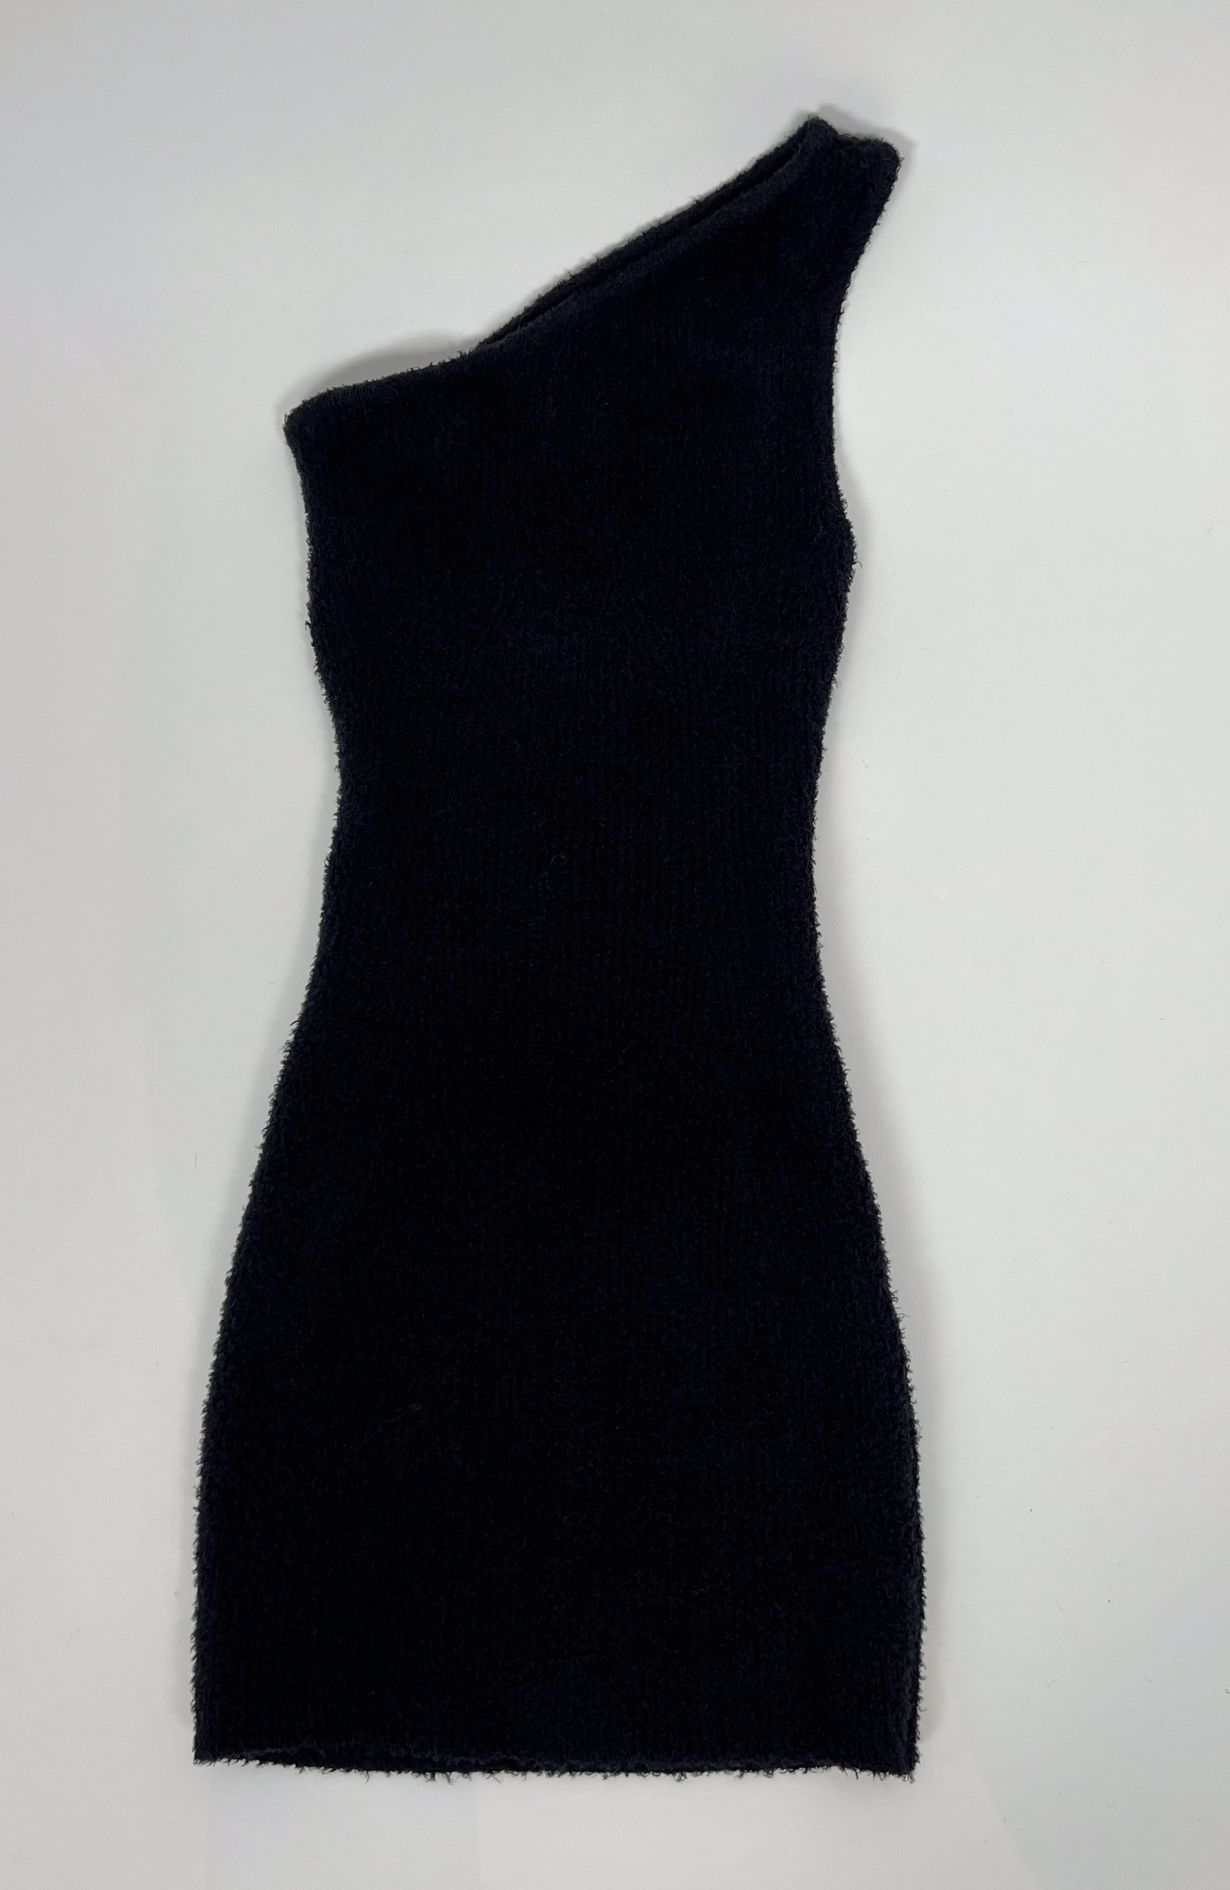 Wardrobe NYC dress black size XS